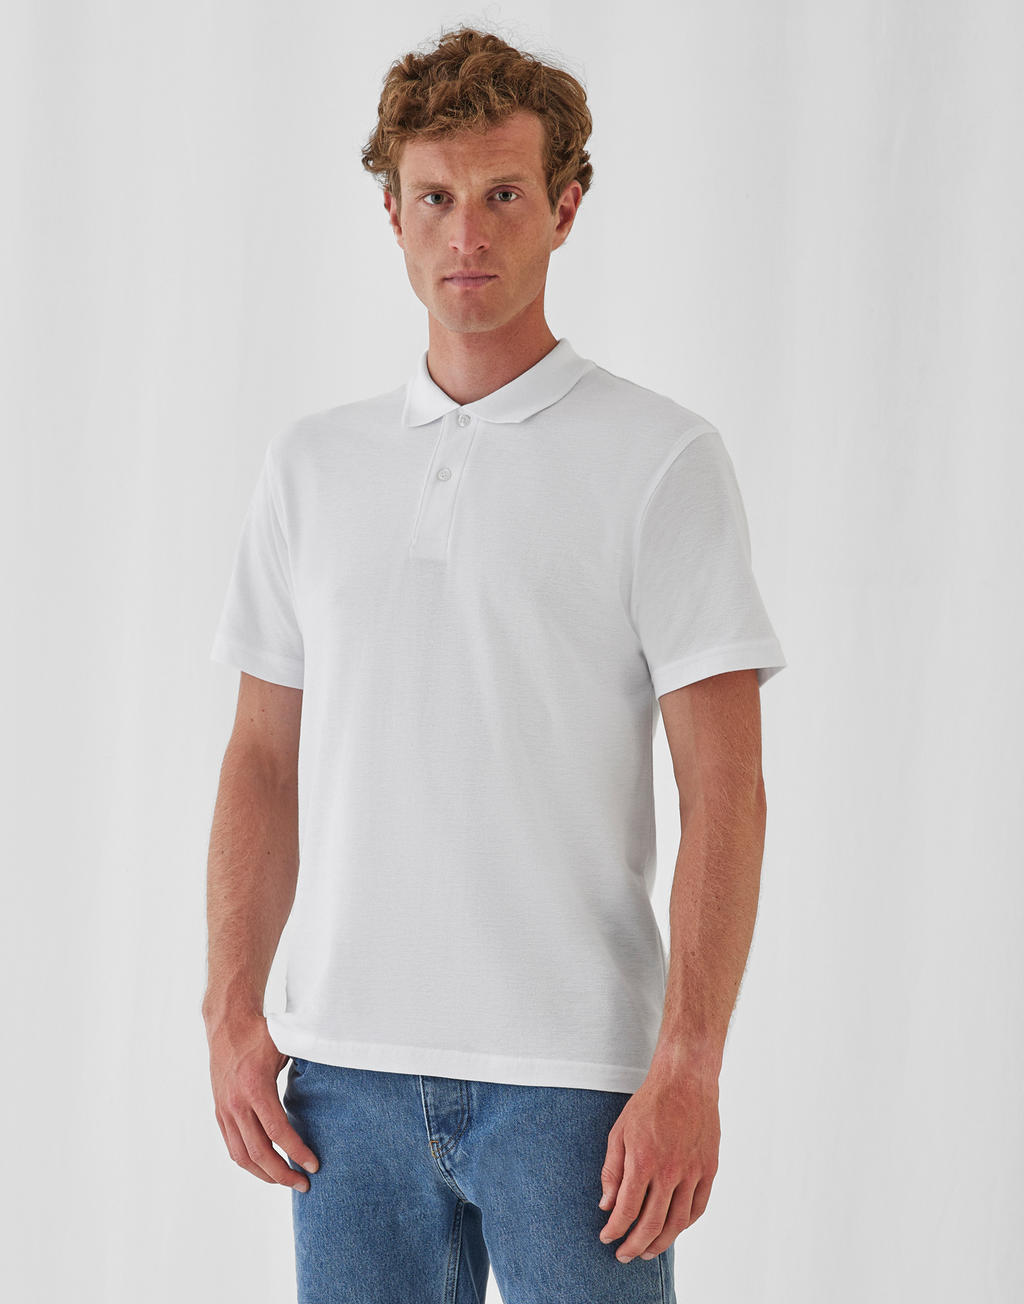  ID.001 Piqu? Polo Shirt in Farbe White